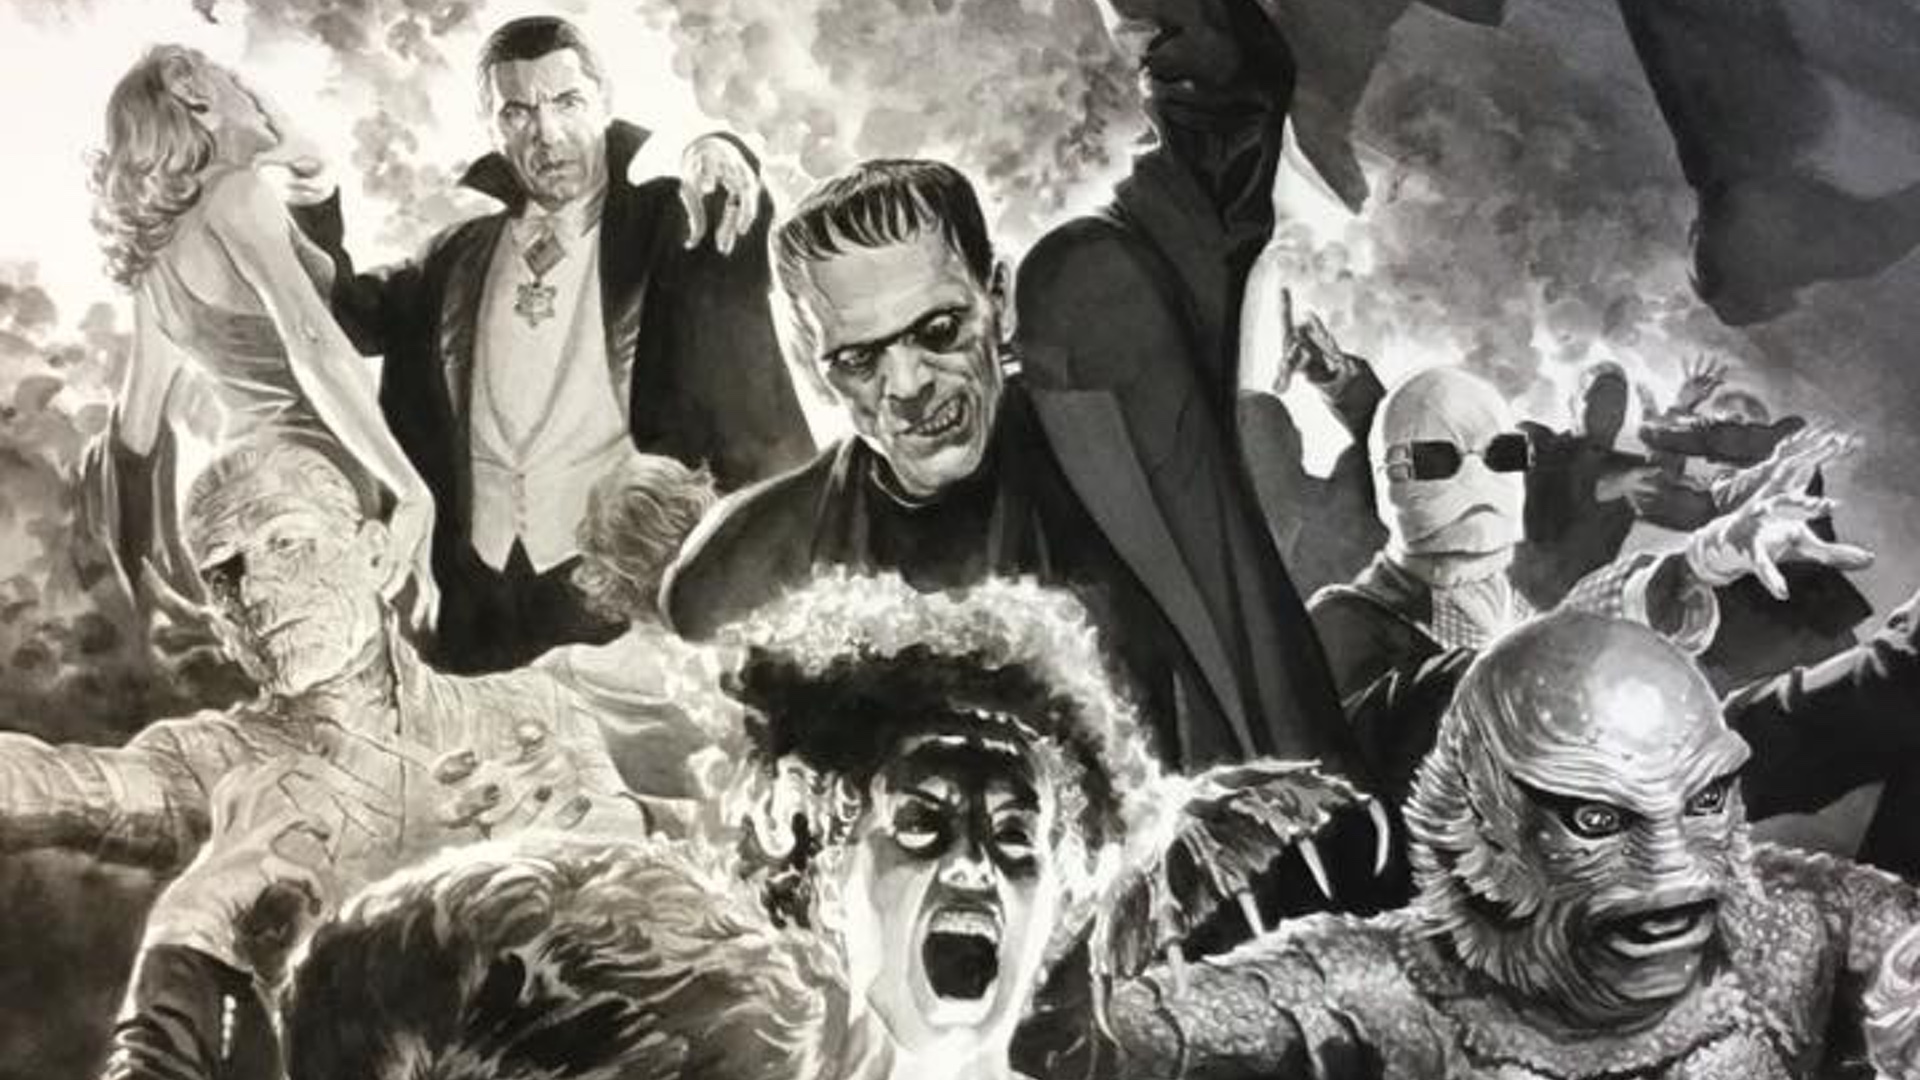 El horror clásico se apodera de Universal Studios Orlando «Universo oscuro» y ya hay atracciones avanzadas…